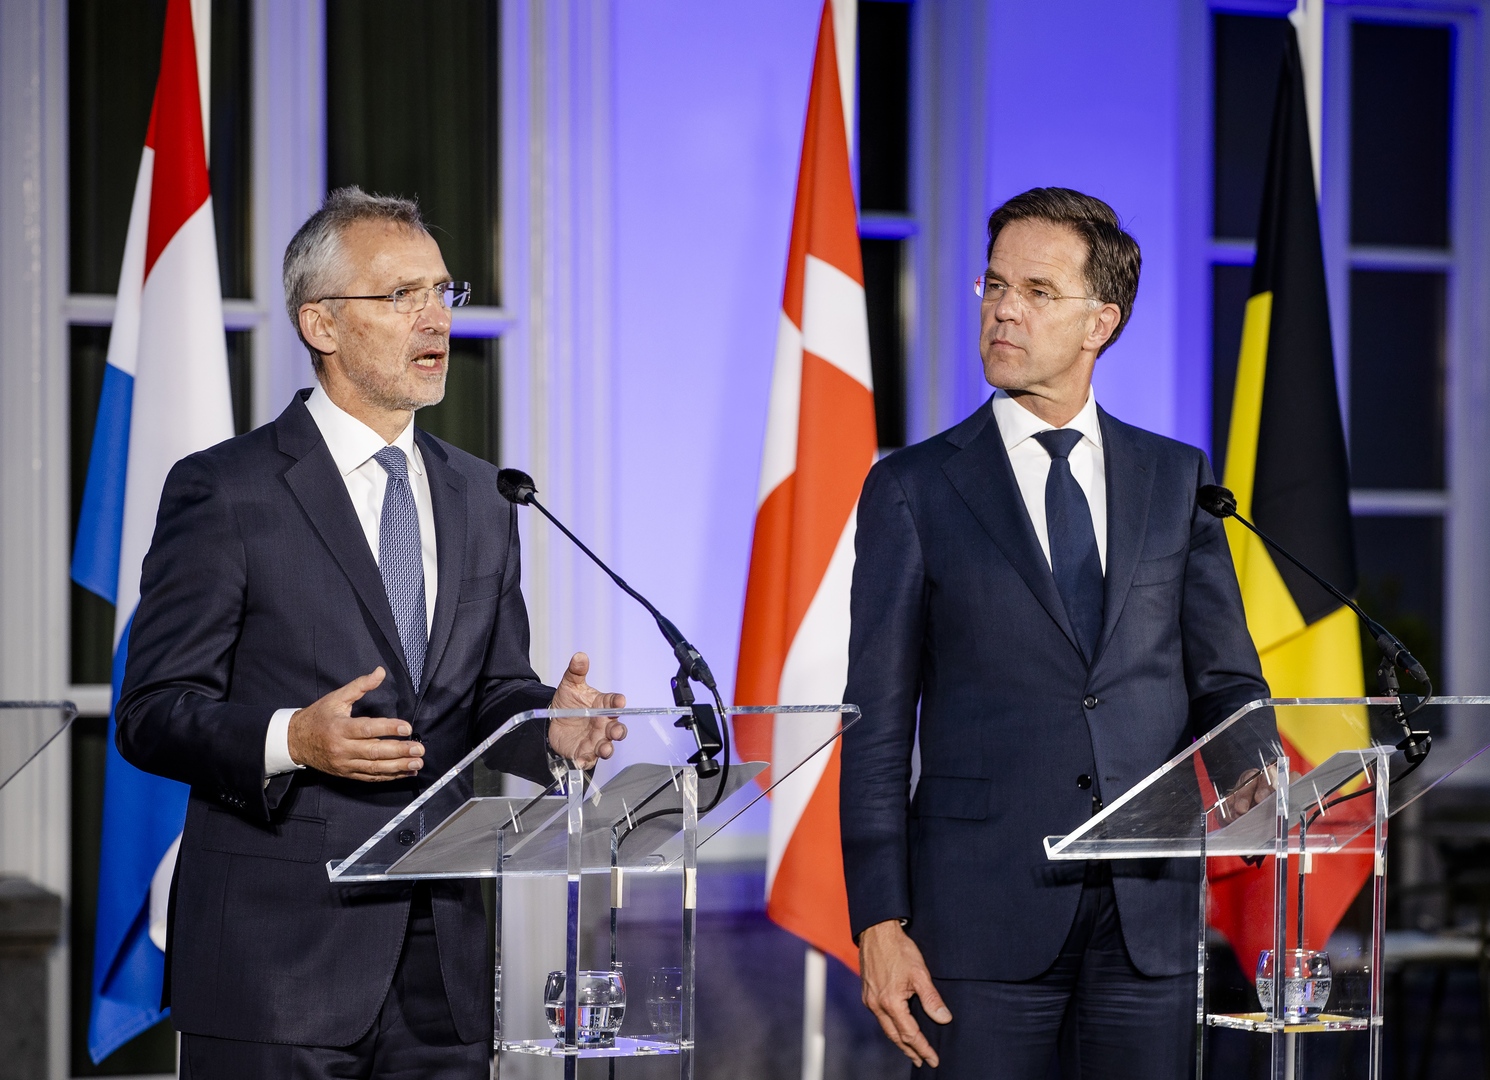 رئيس وزراء هولندا وأمين عام الناتو يبحثان تزويد أوكرانيا بالأسلحة